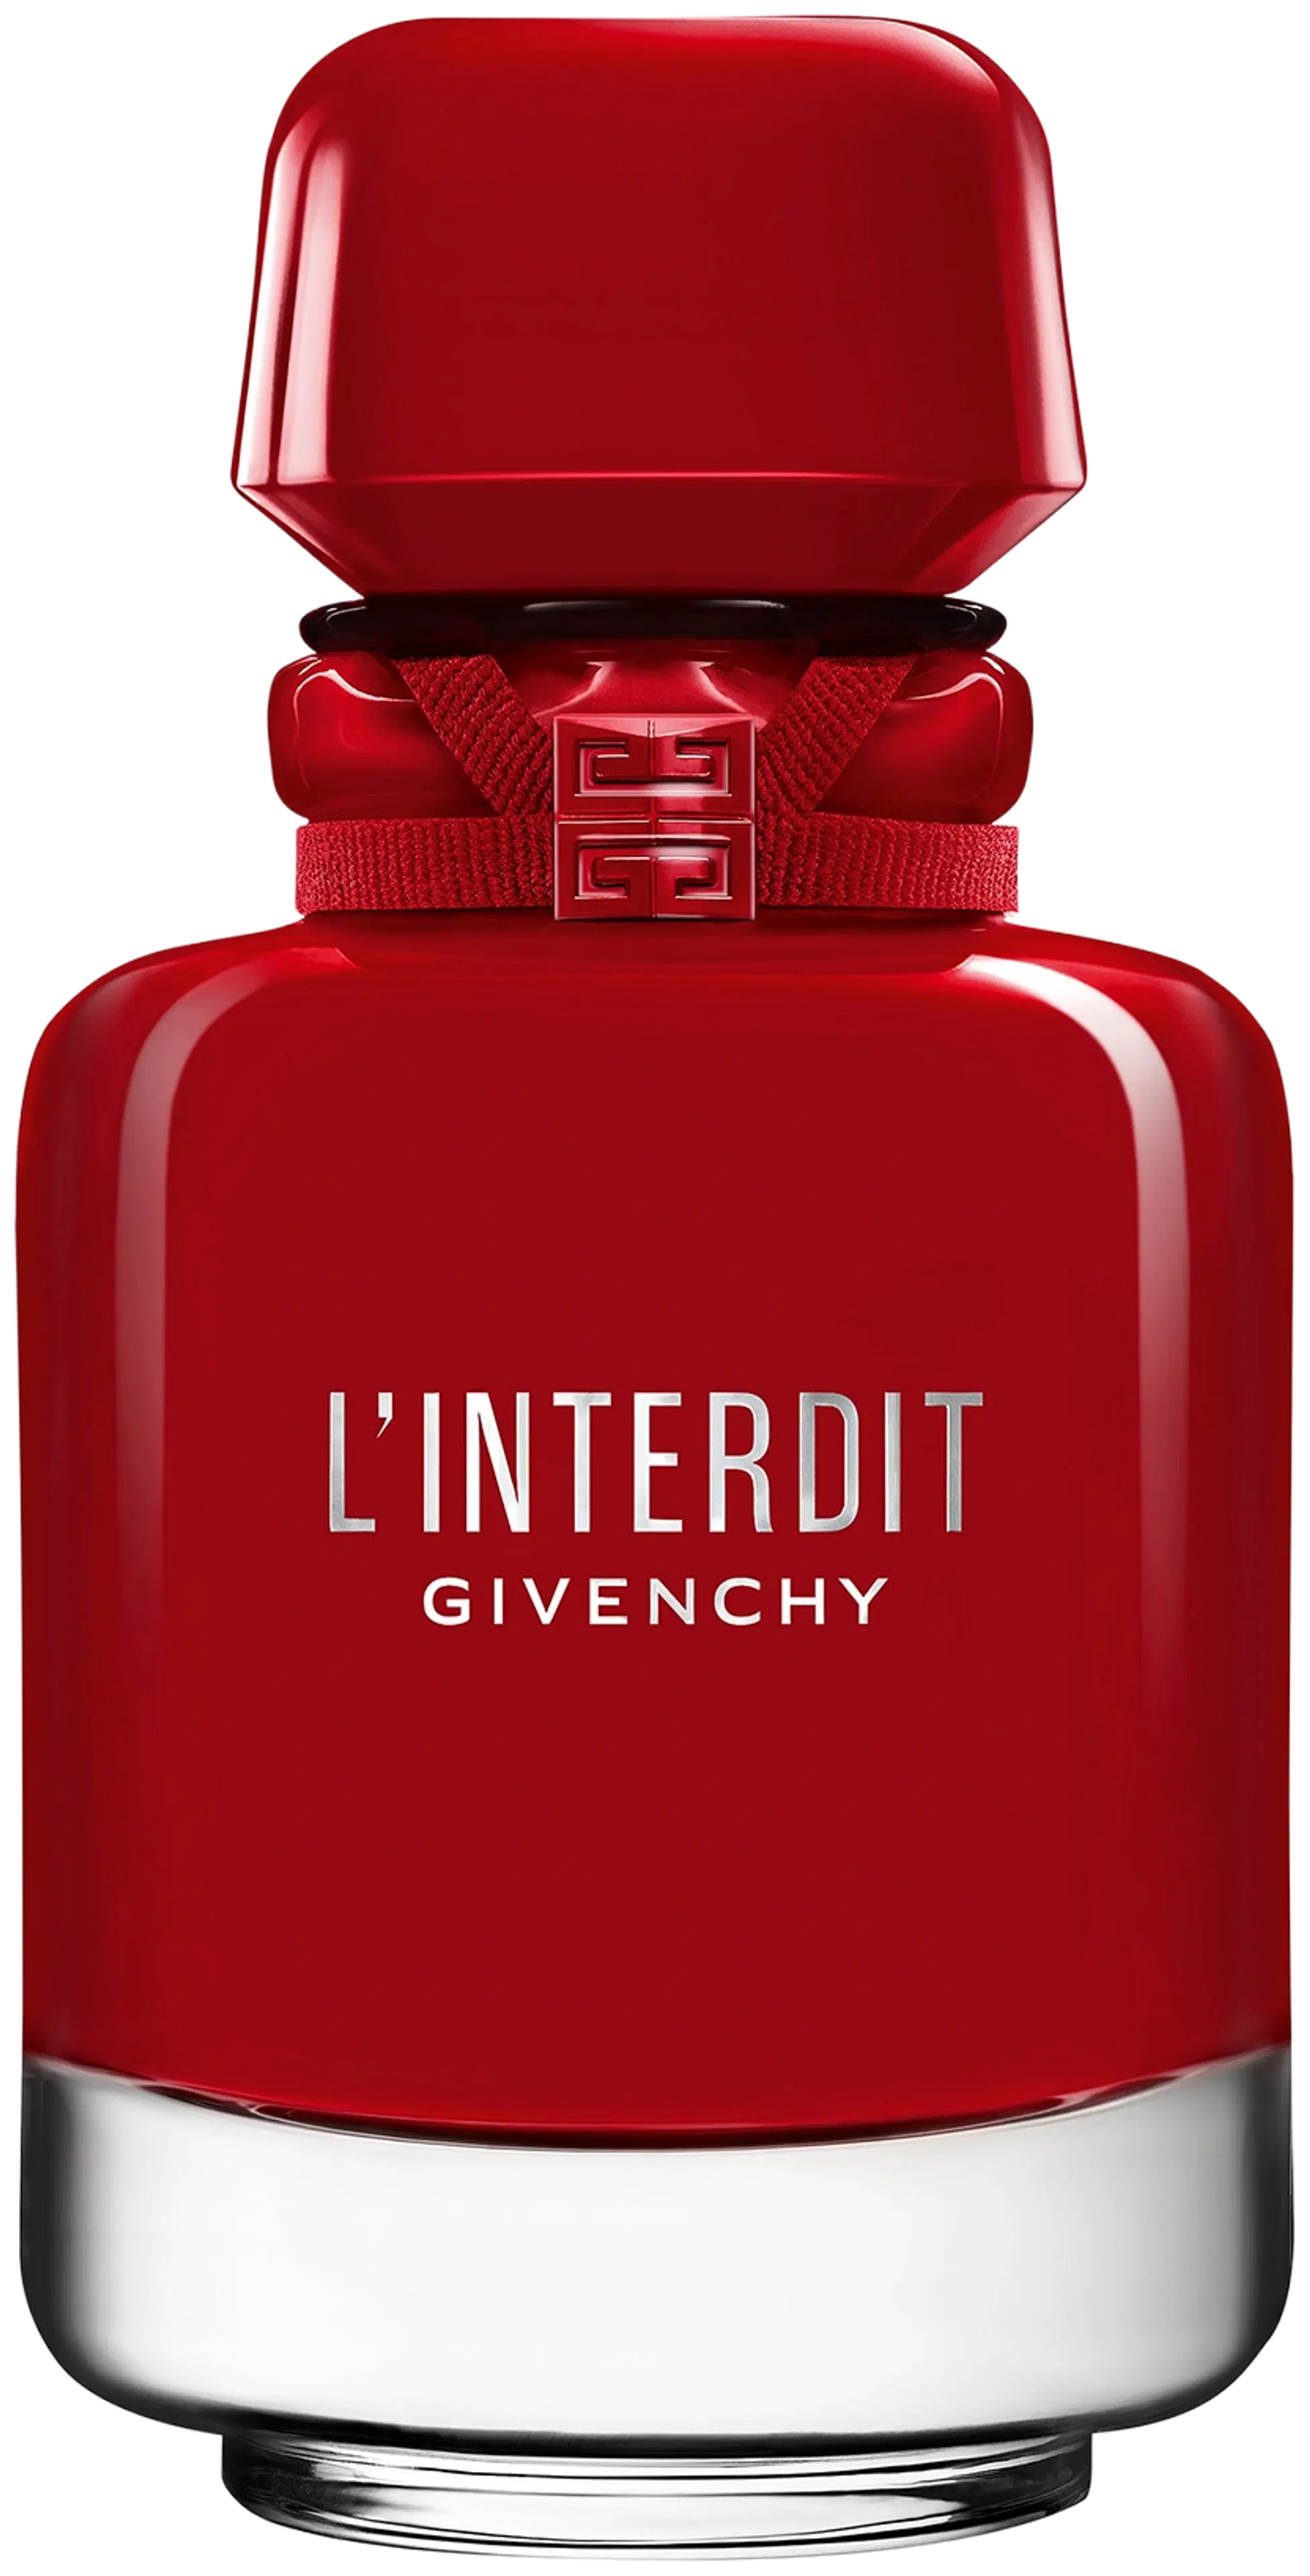 Givenchy L'Interdit Eau de Parfum Rouge Ultime 50ml